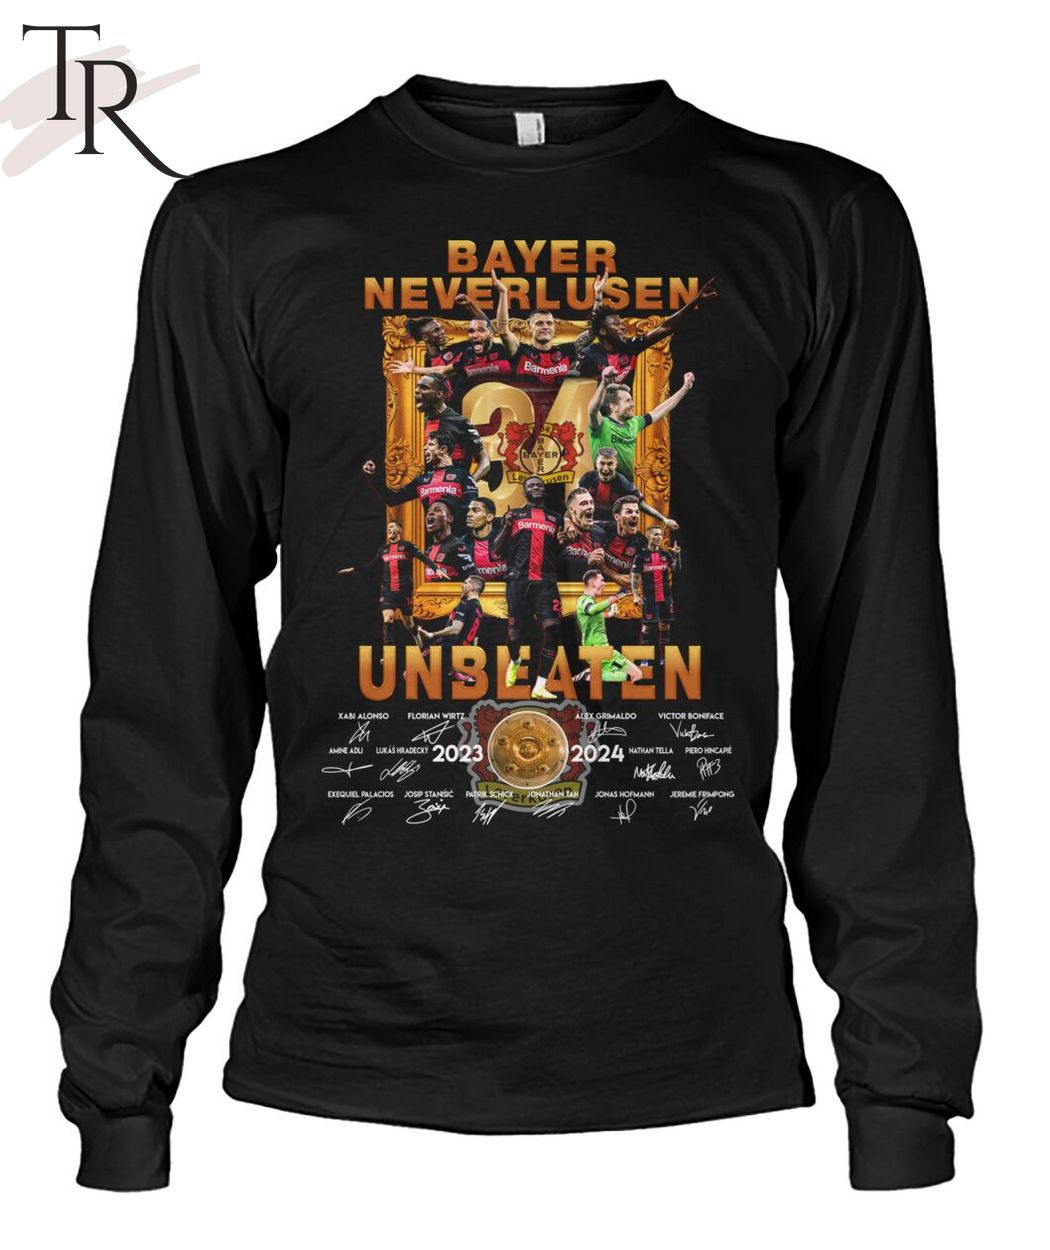 Bayer Neverlusen Unbeaten 2023-2024 T-Shirt